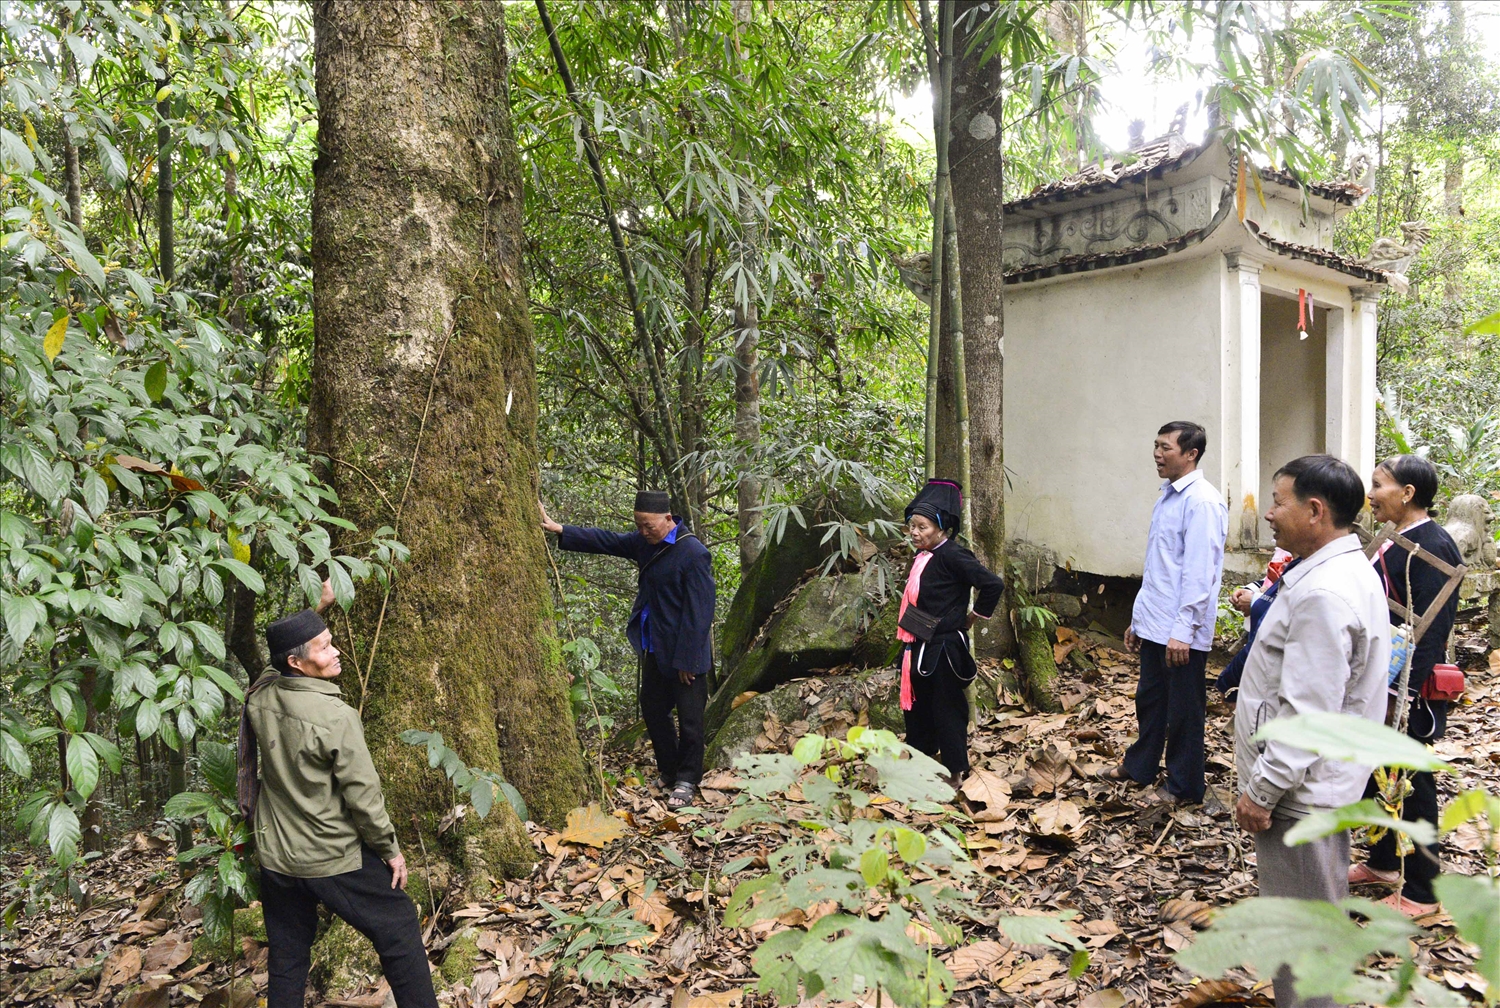 Mỗi bản làng người Dao đều có một khu rừng cấm, trước khi làm lễ cúng bản, các cao niên có uy tín sẽ vào khu rừng cấm xin phép thần rừng cho bà con được phép lấy củi phục vụ việc làm lễ cúng bản.